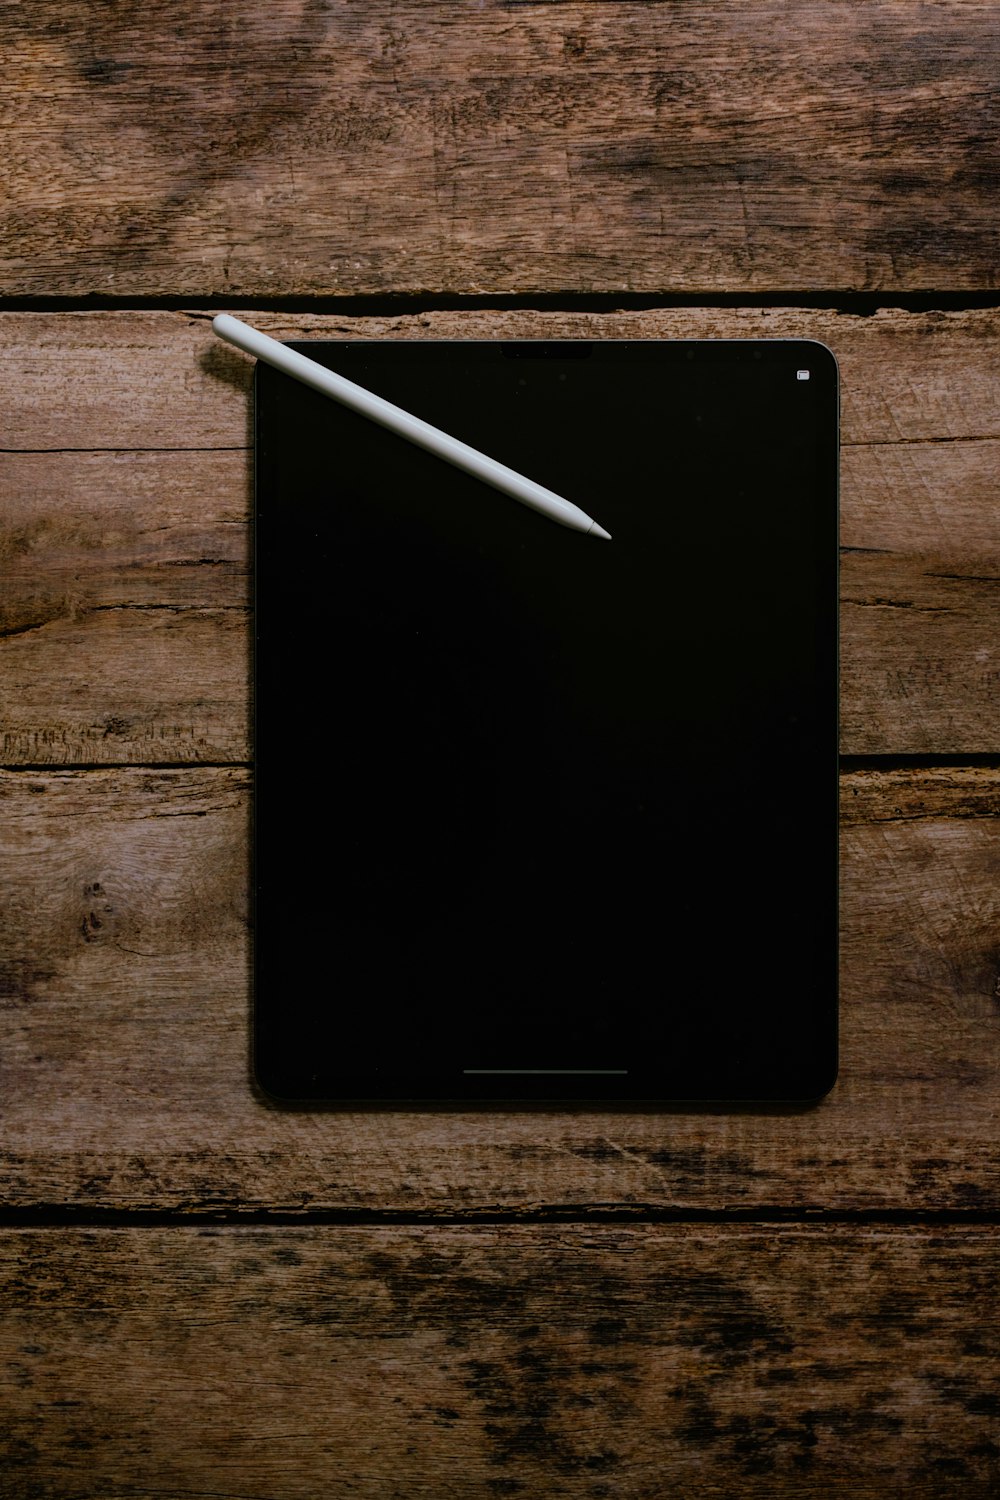 iPad negro sobre mesa de madera marrón